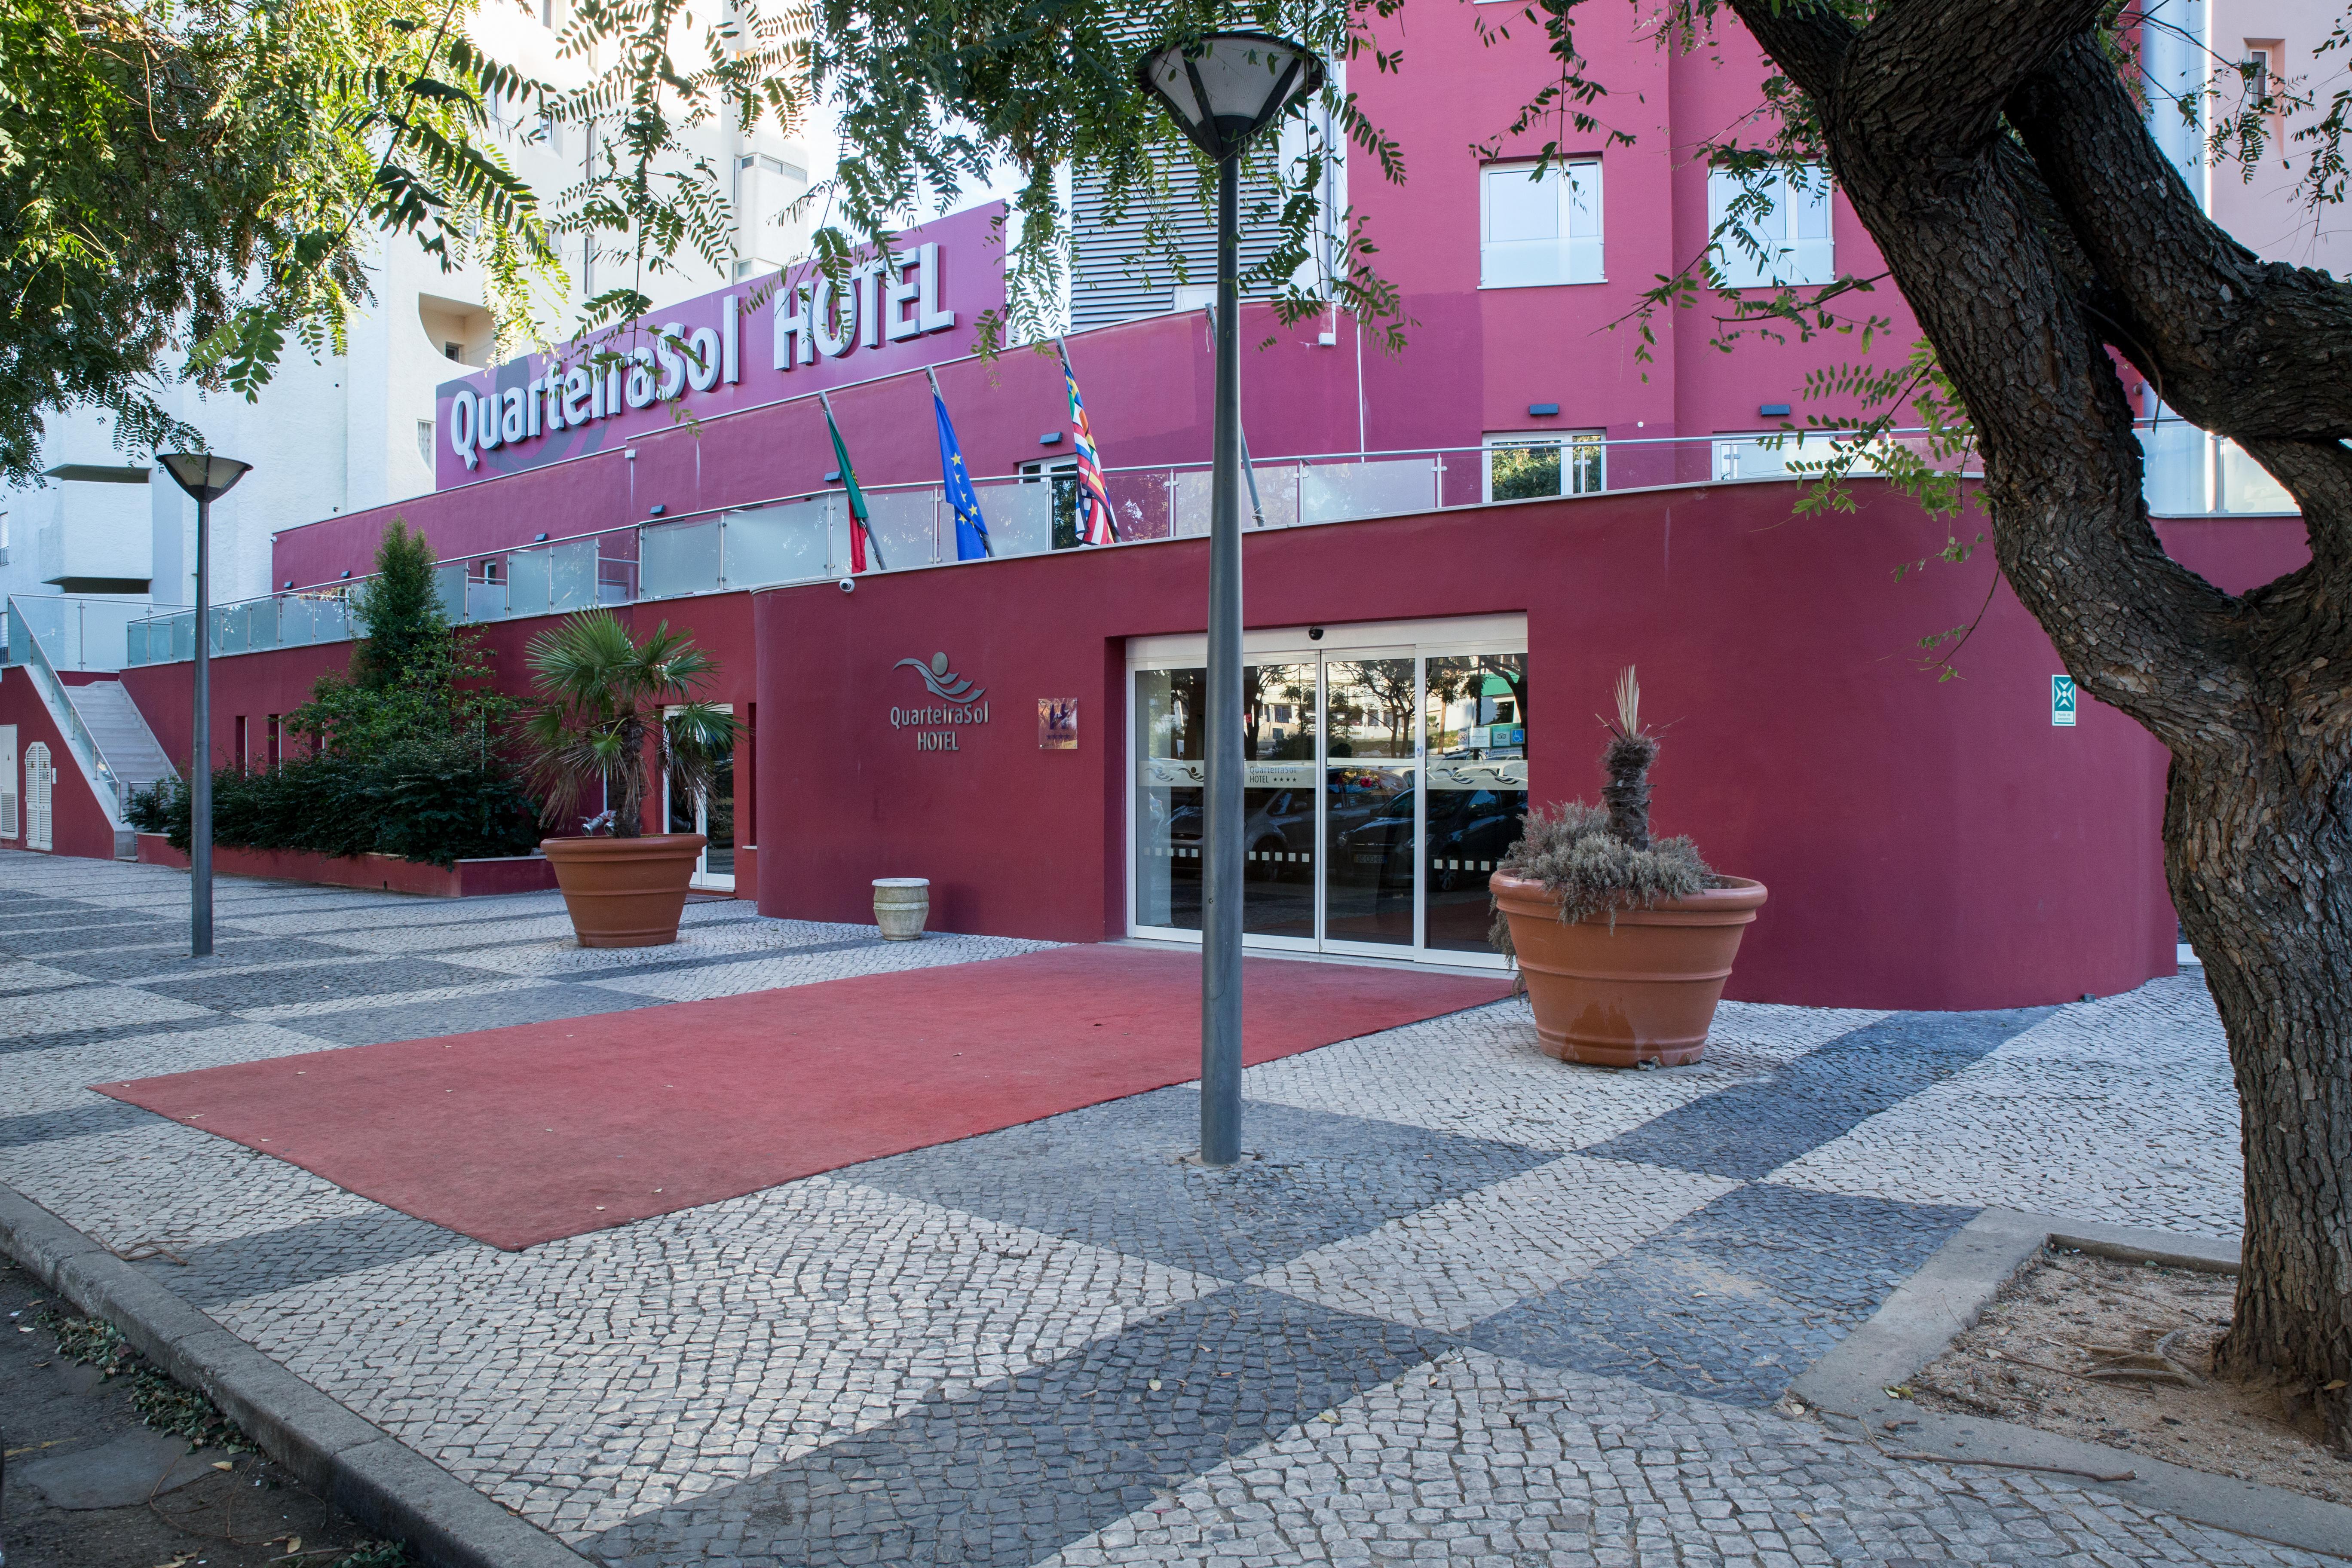 Hotel Quarteirasol Exterior photo